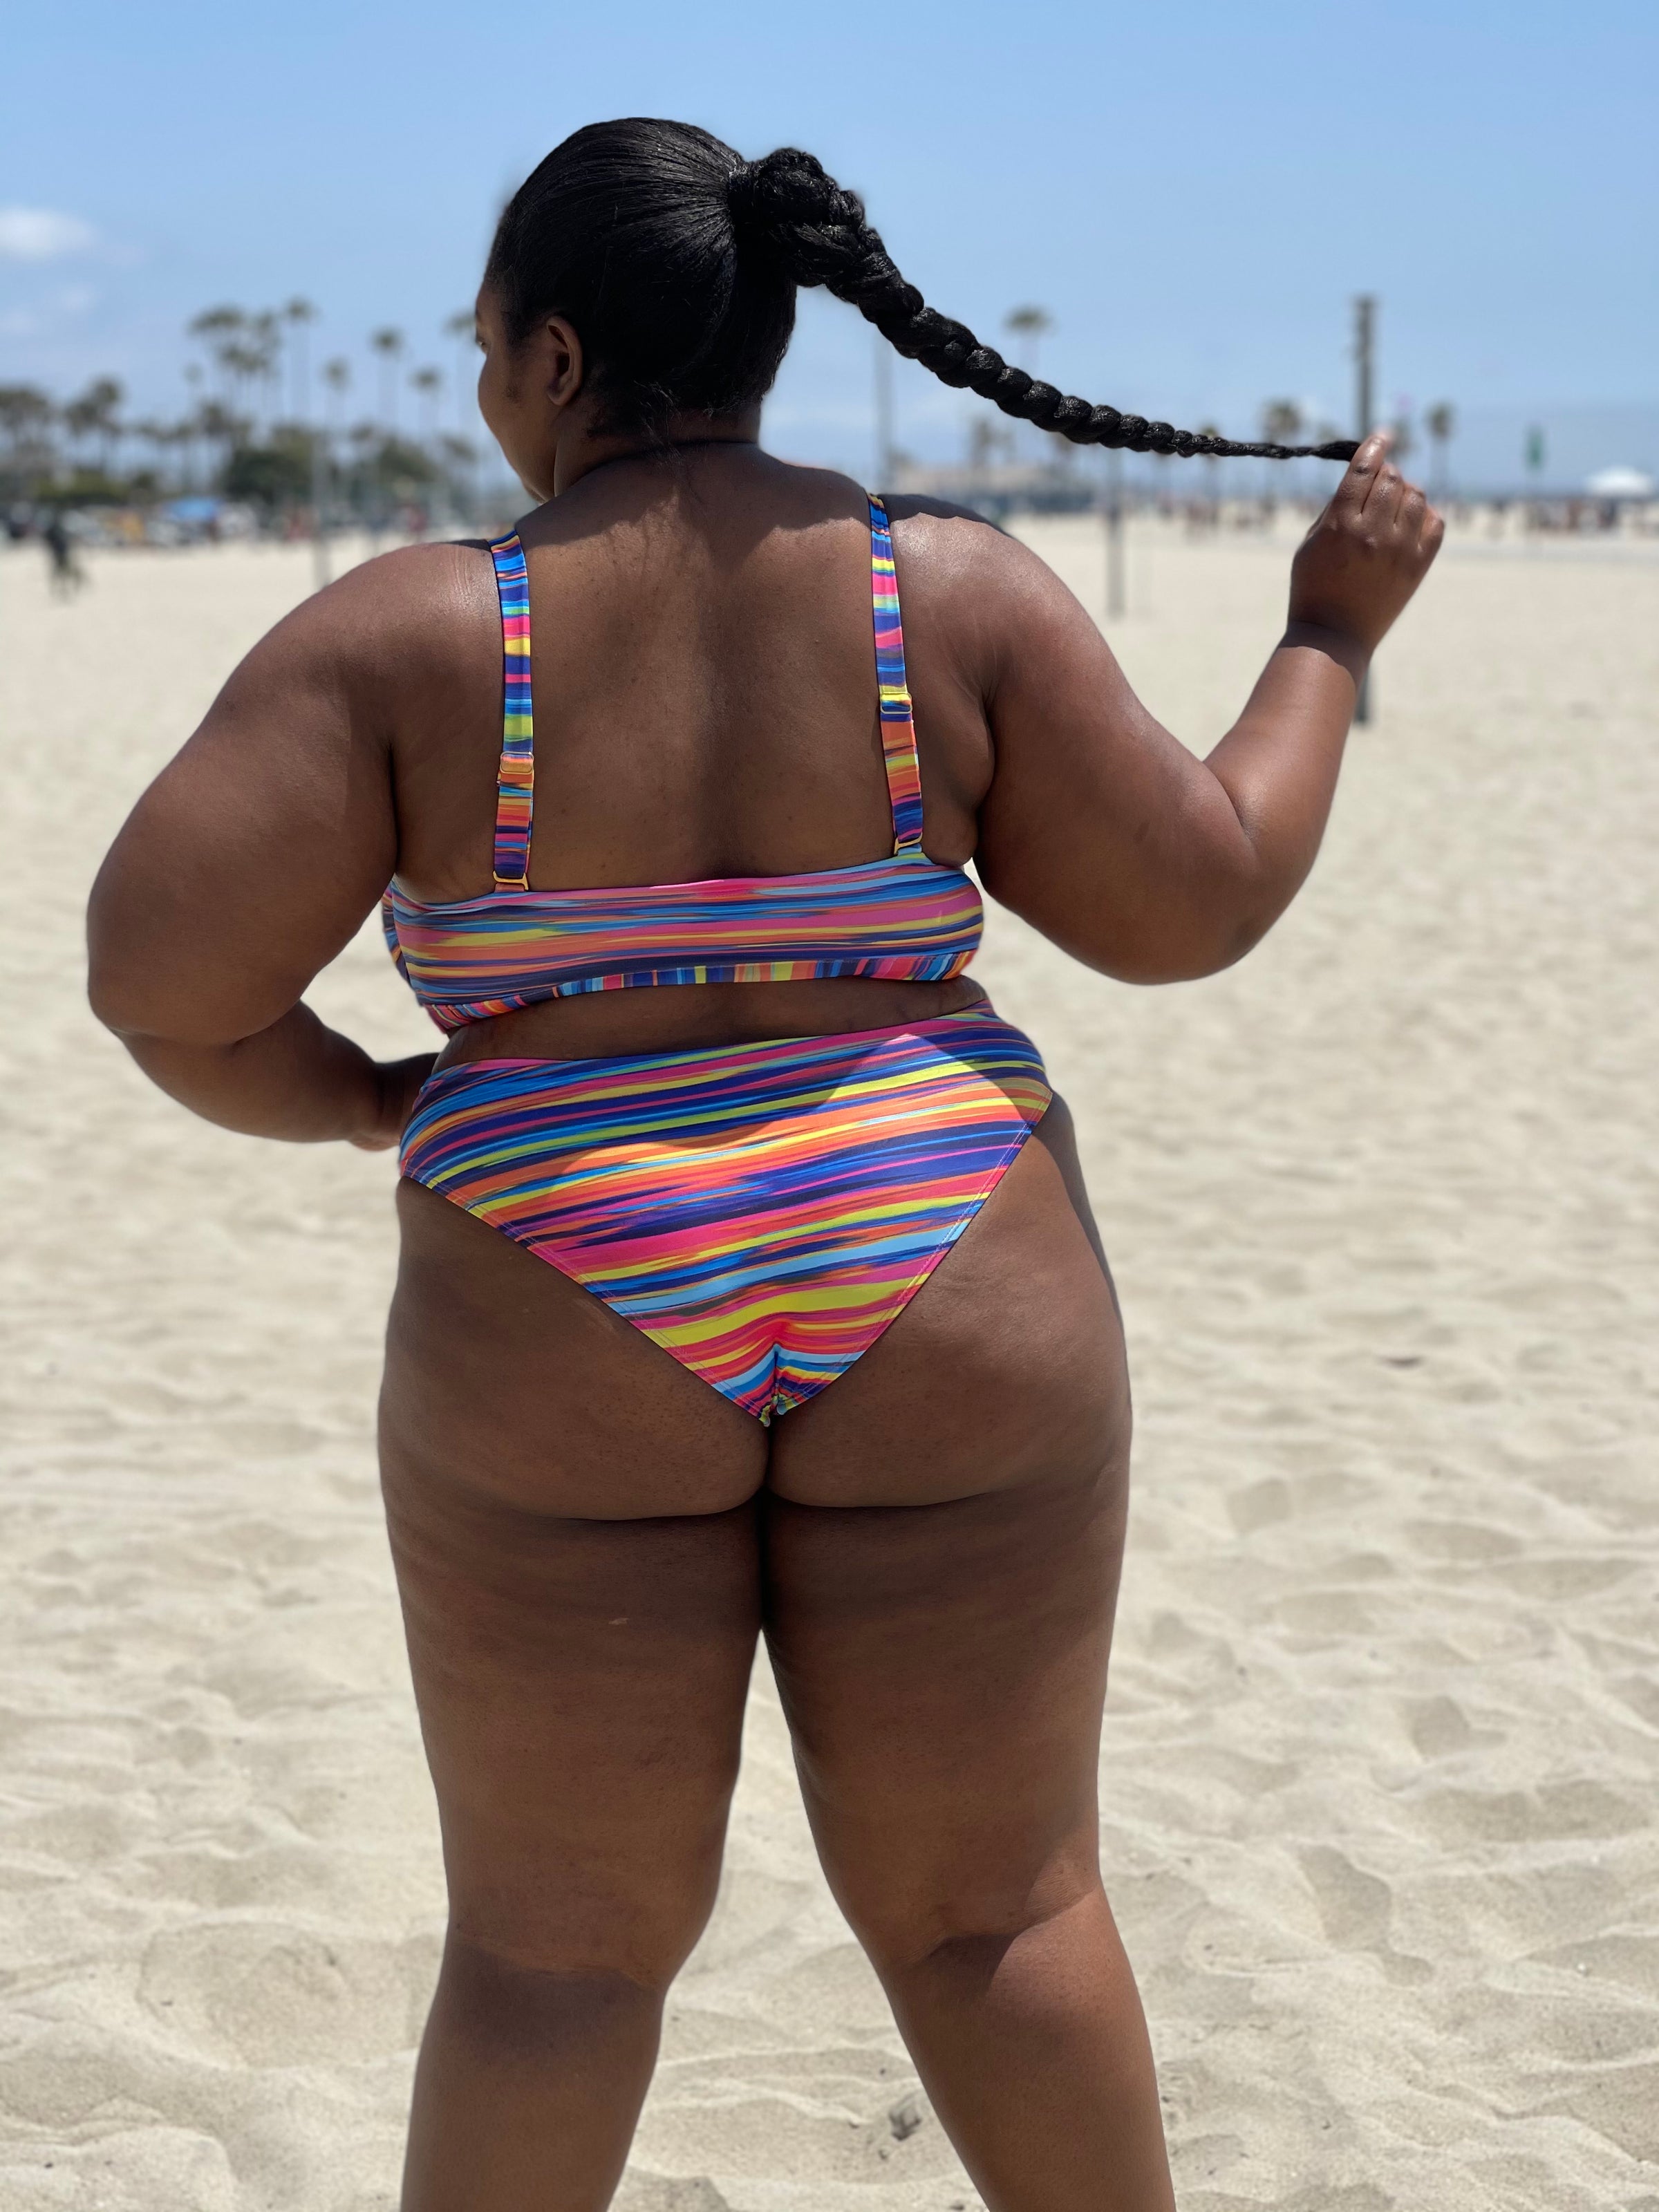 coleman paiva add thick black women in bikinis photo